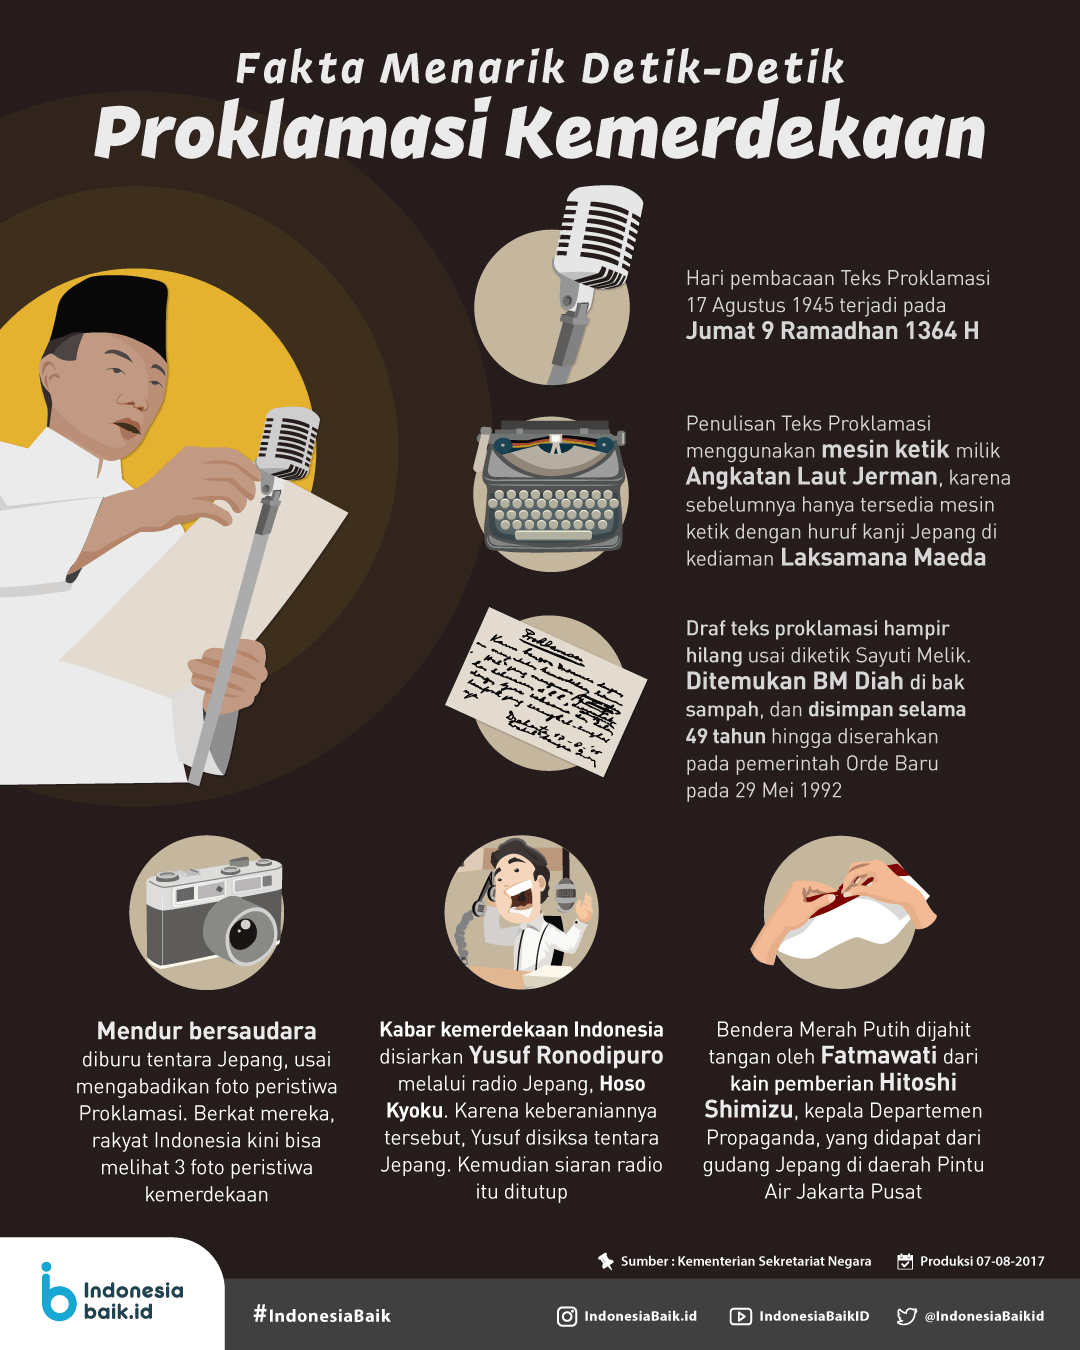 Bagaimana sikap rakyat indonesia dalam menanggapi proklamasi kemerdekaan saat itu